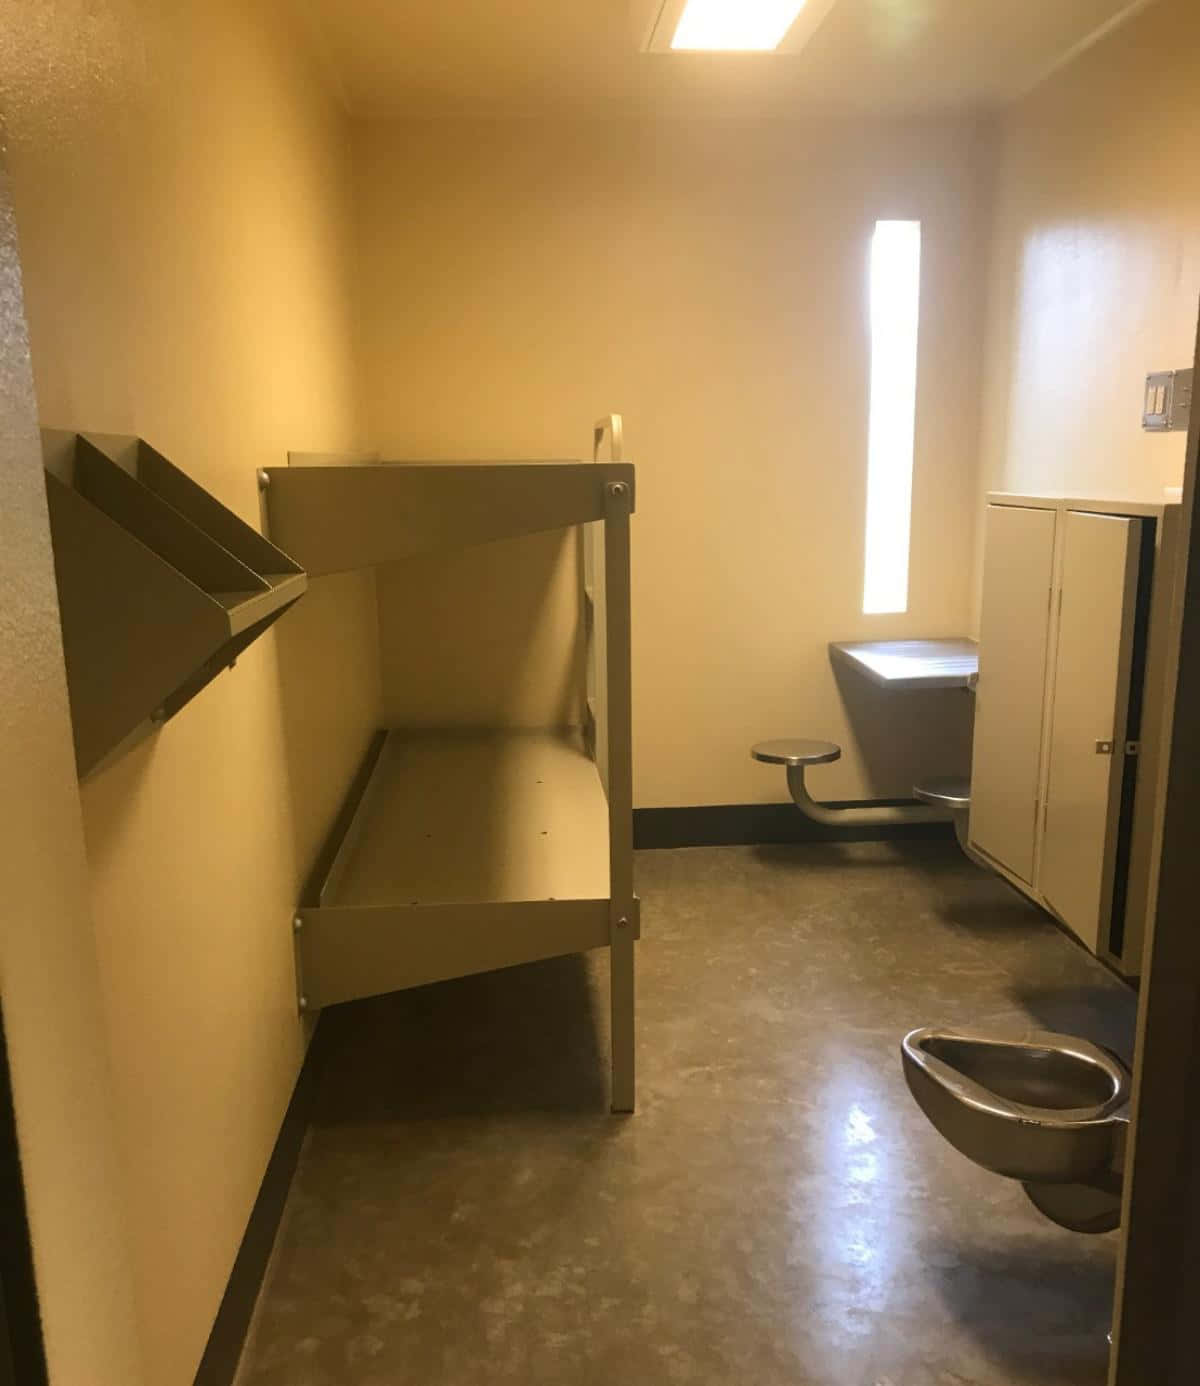 Et værelse med en toilet og en vask.